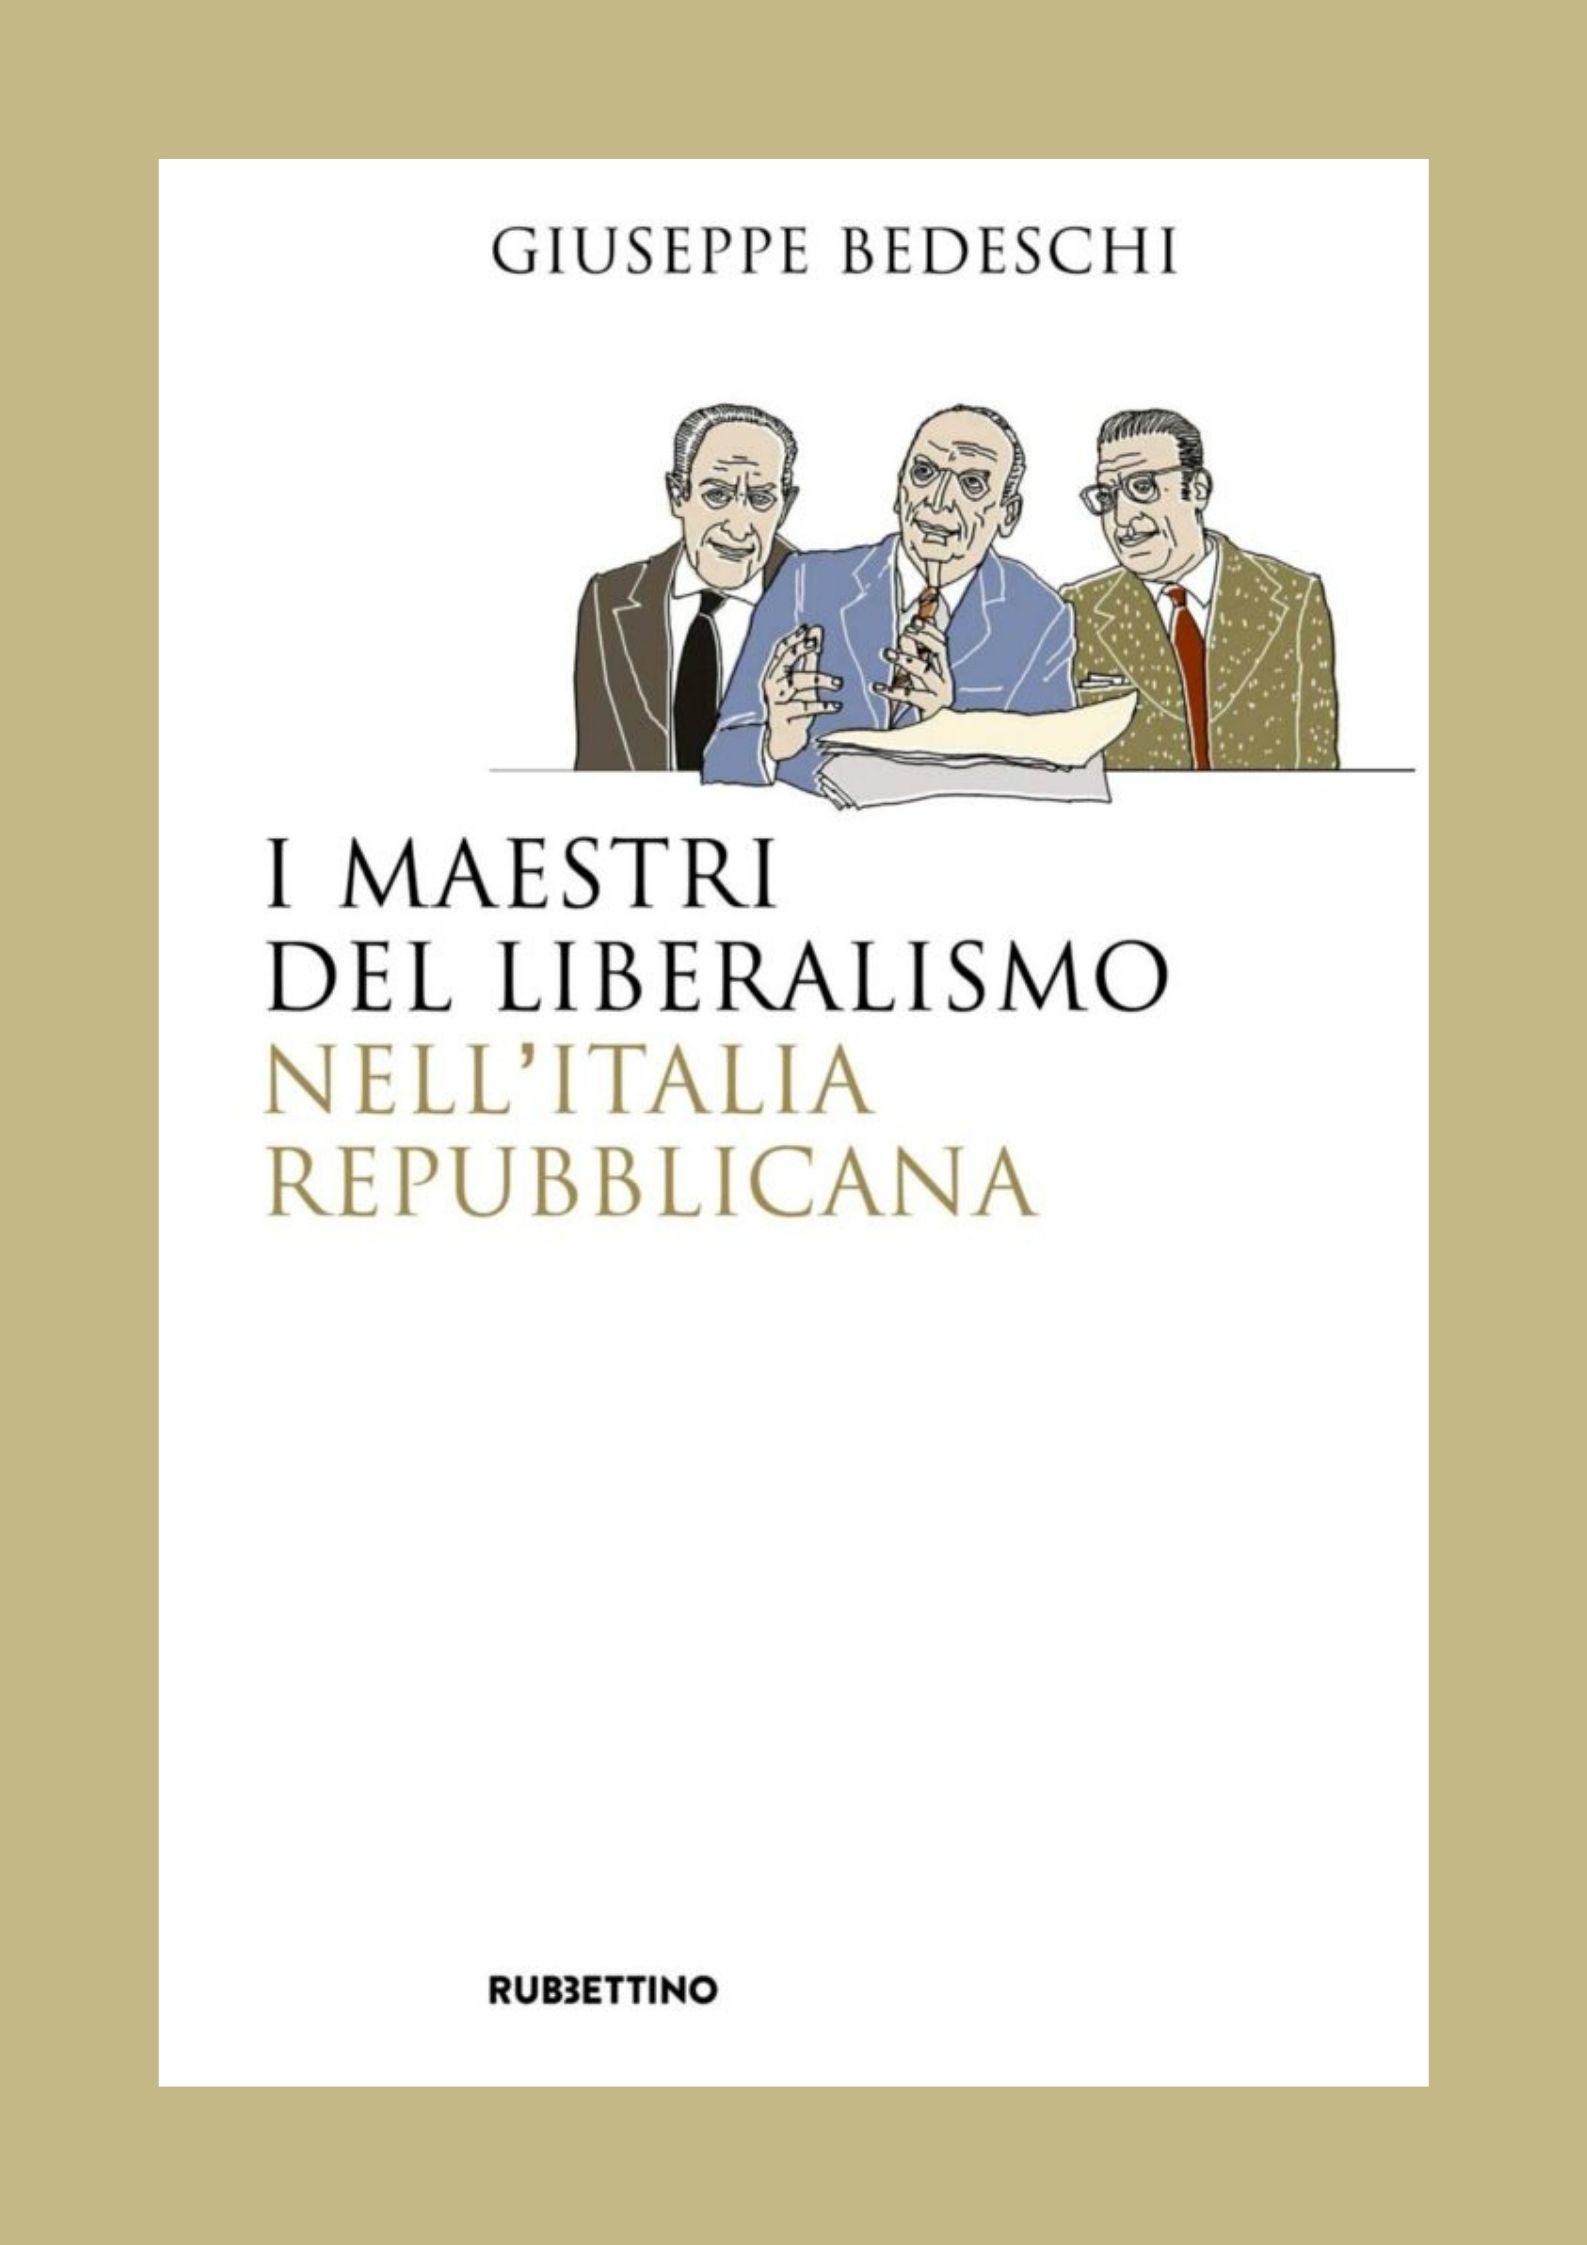 I-maestri-del-liberalismo-nellItalia-repubblicana-724x1024